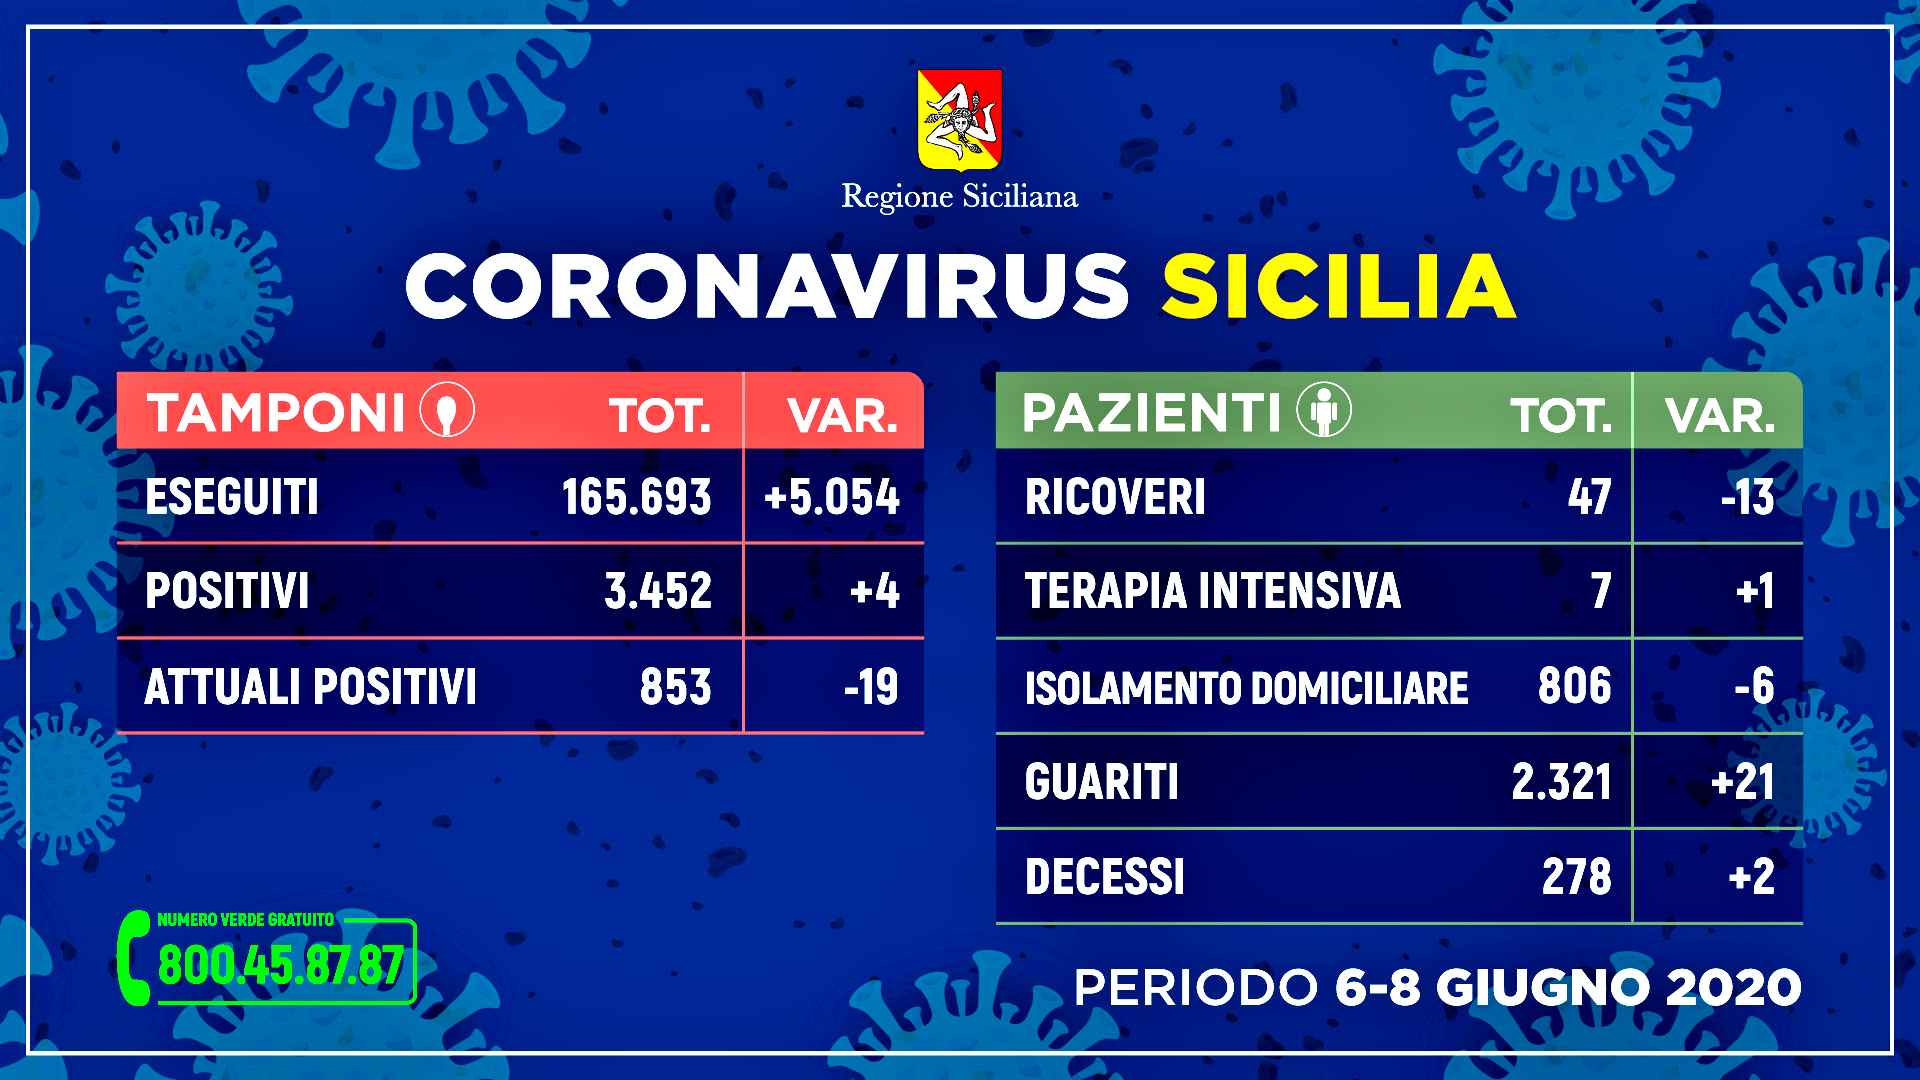 Coronavirus, in Sicilia 4 positivi in 24h ma sempre più guariti